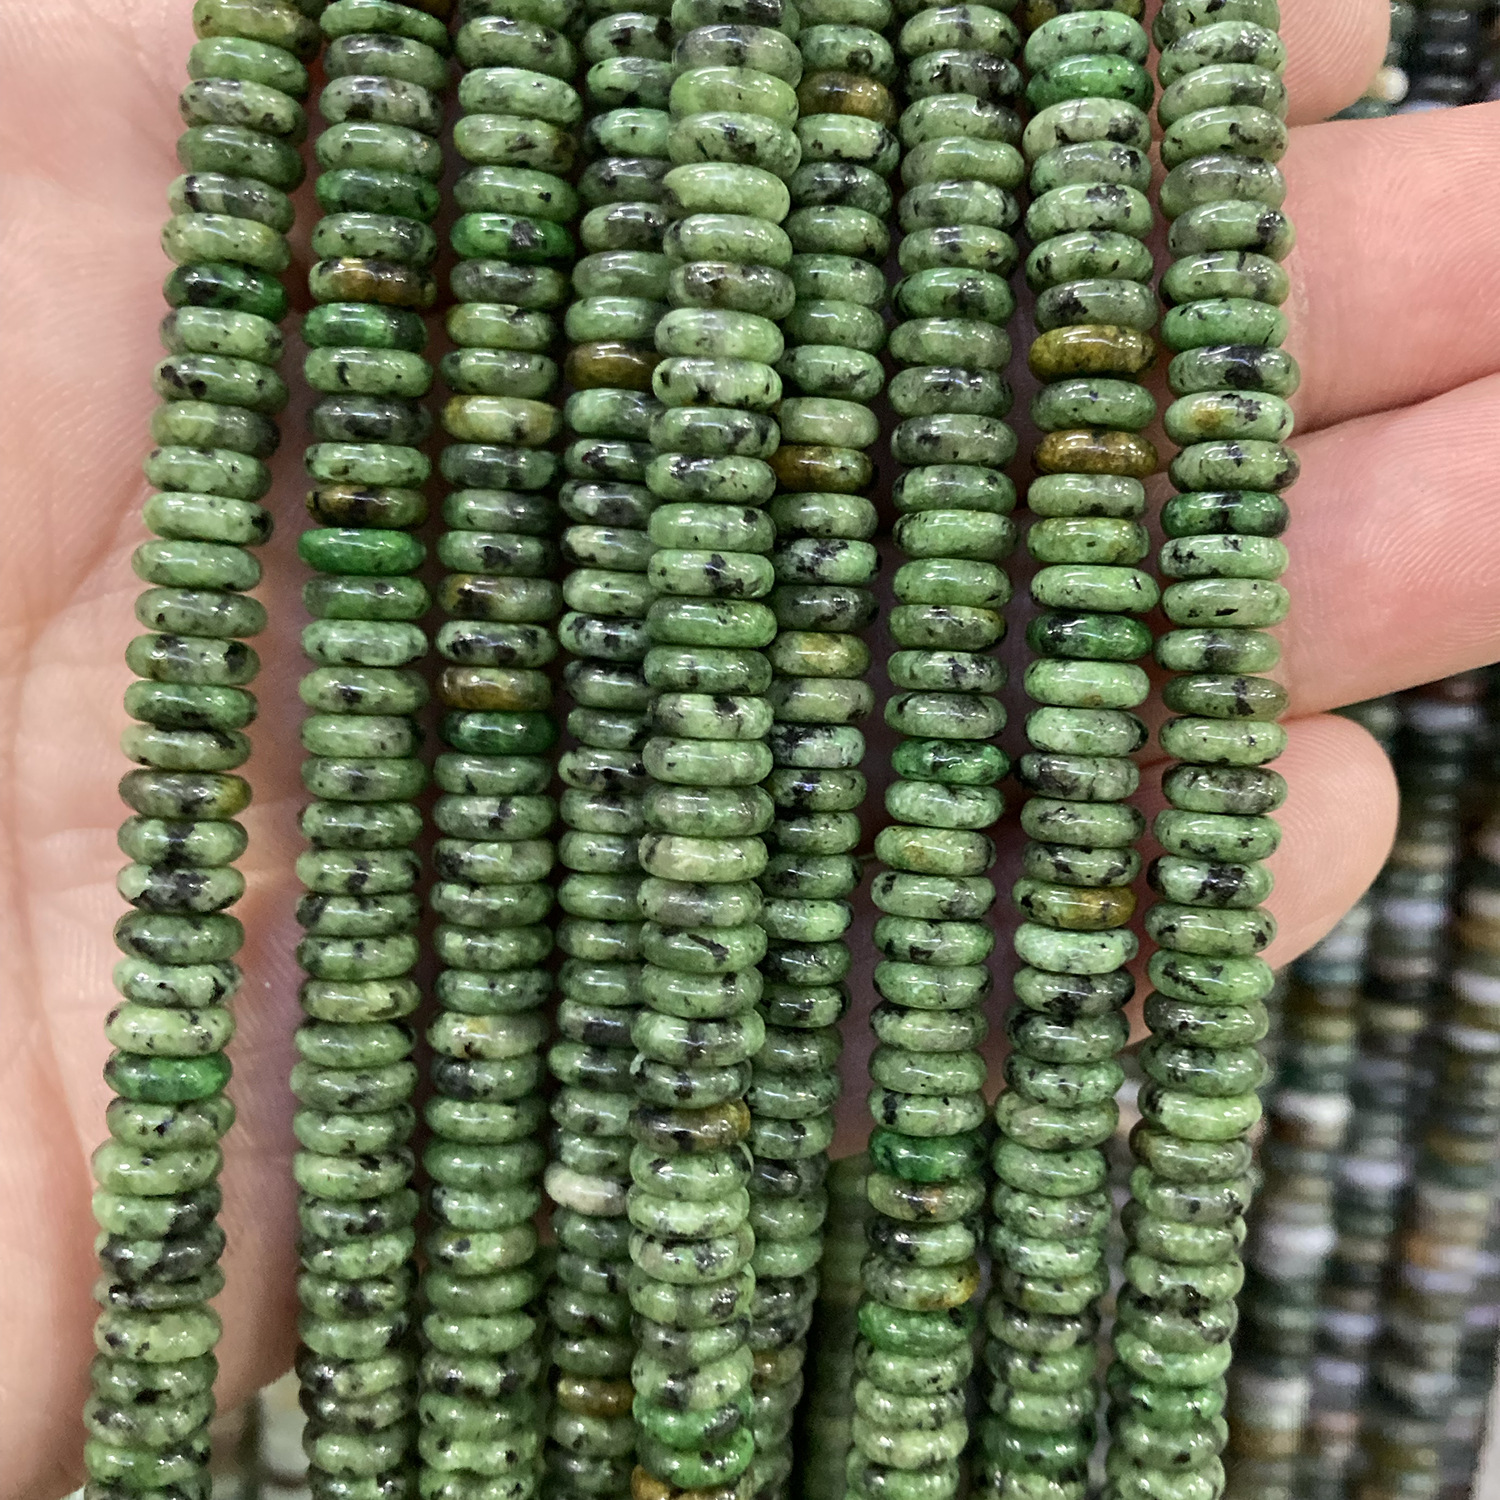 Green sesame seed